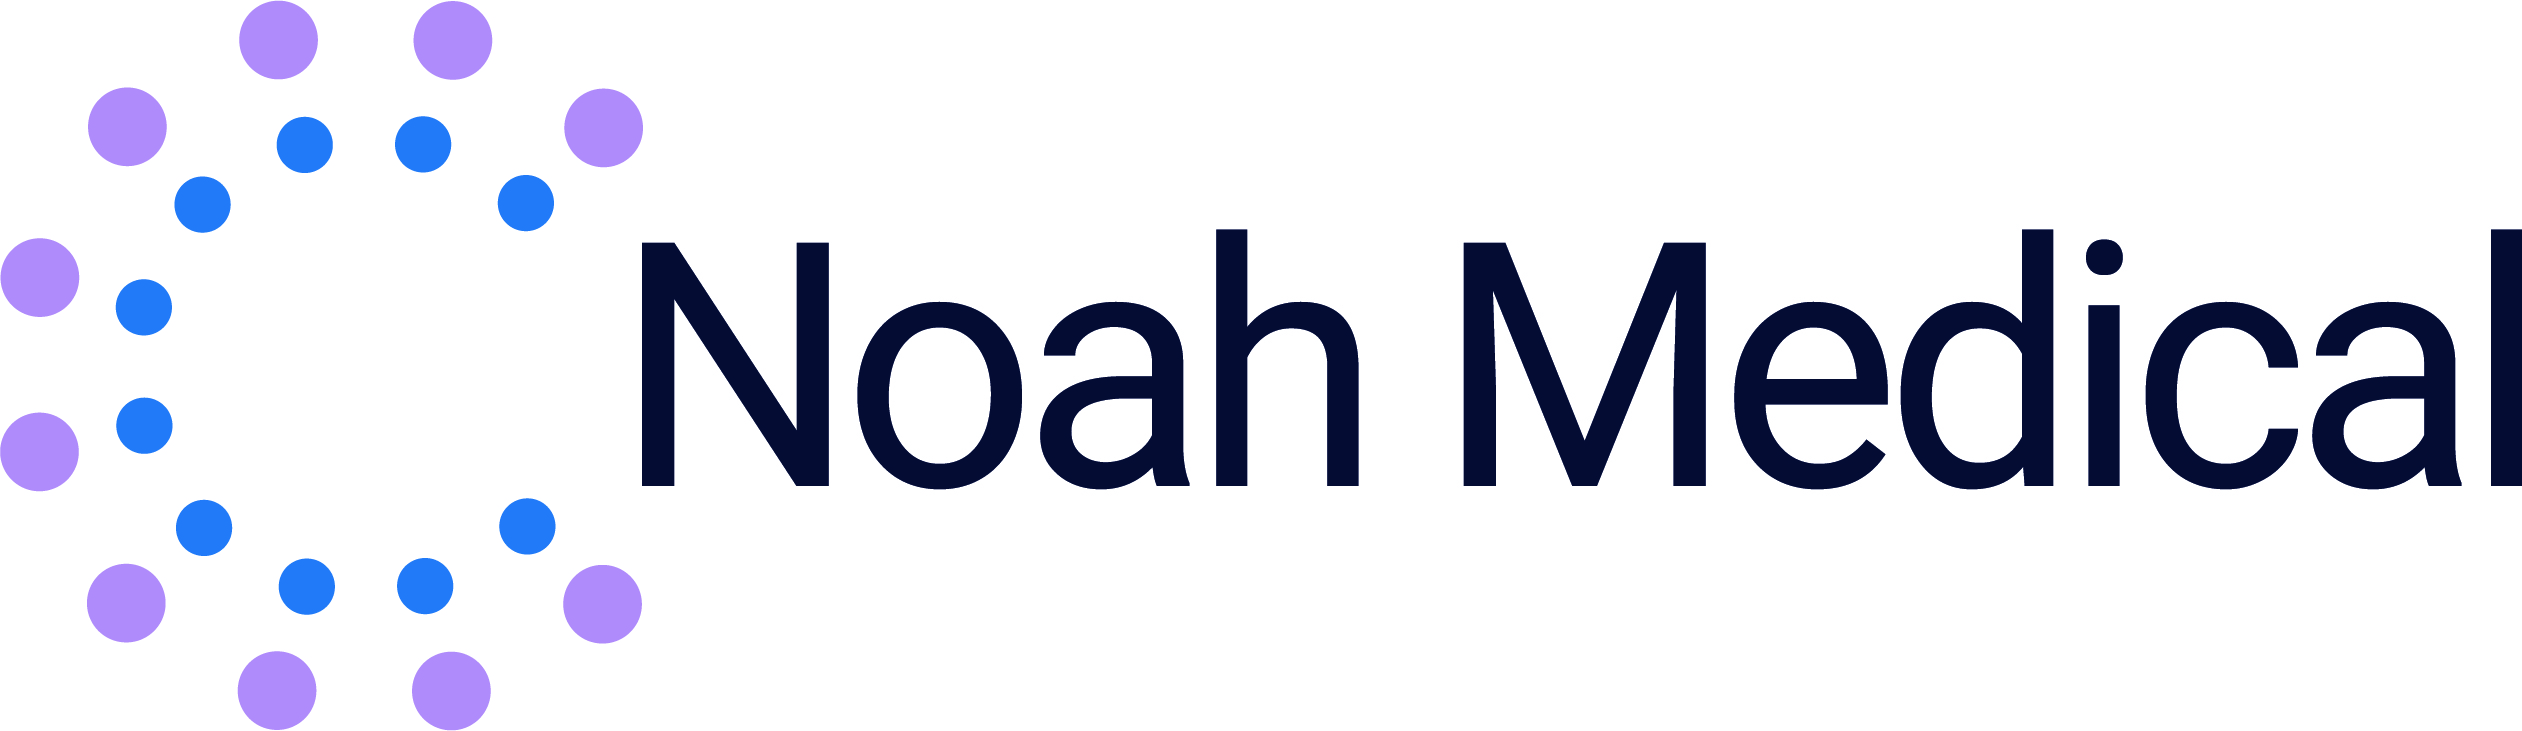 Noah_Medical_logo_MASTER.jpg